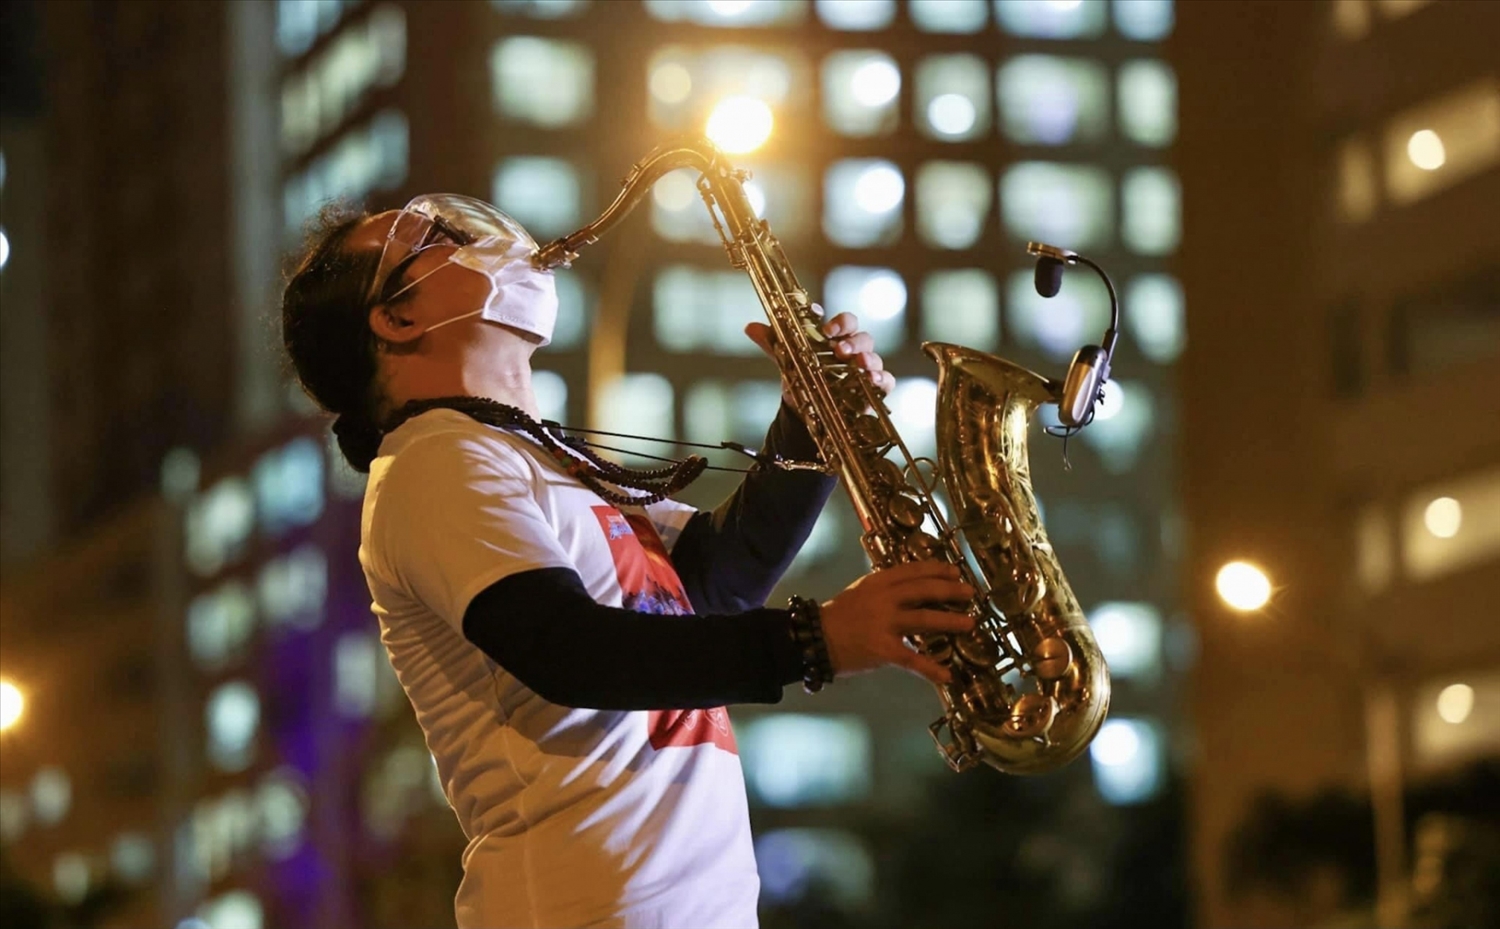 Nghệ sĩ Trần Mạnh Tuấn hoa mình trong tiếng kèn Saxophone với ca khúc Quê hương tại sân bệnh viện dã chiến.